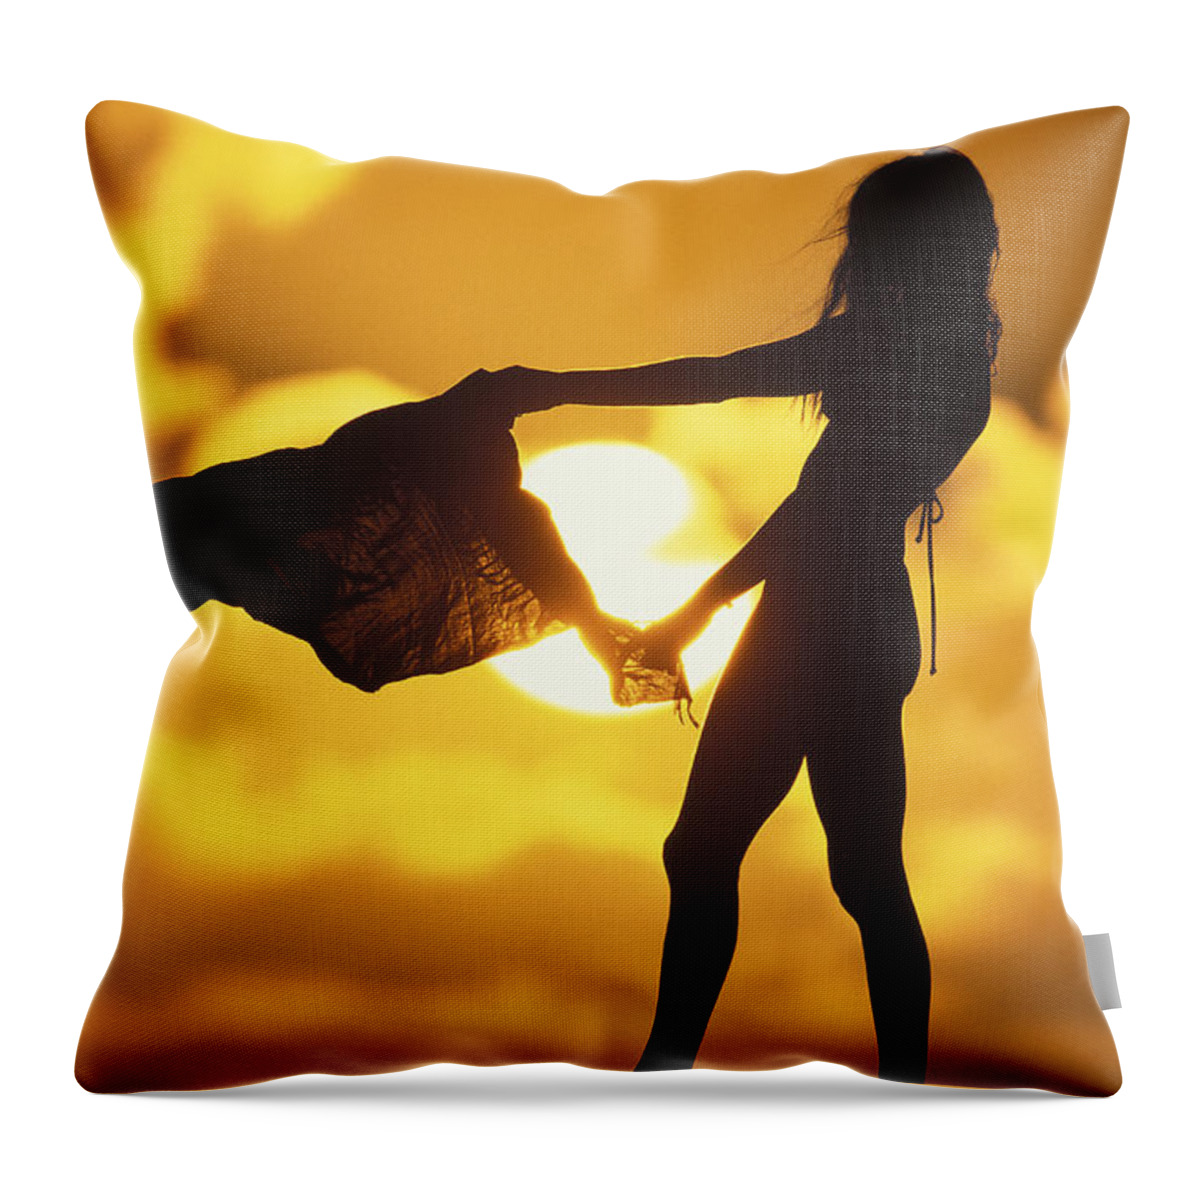 Beach Girl Throw Pillow featuring the photograph Beach Girl by Sean Davey